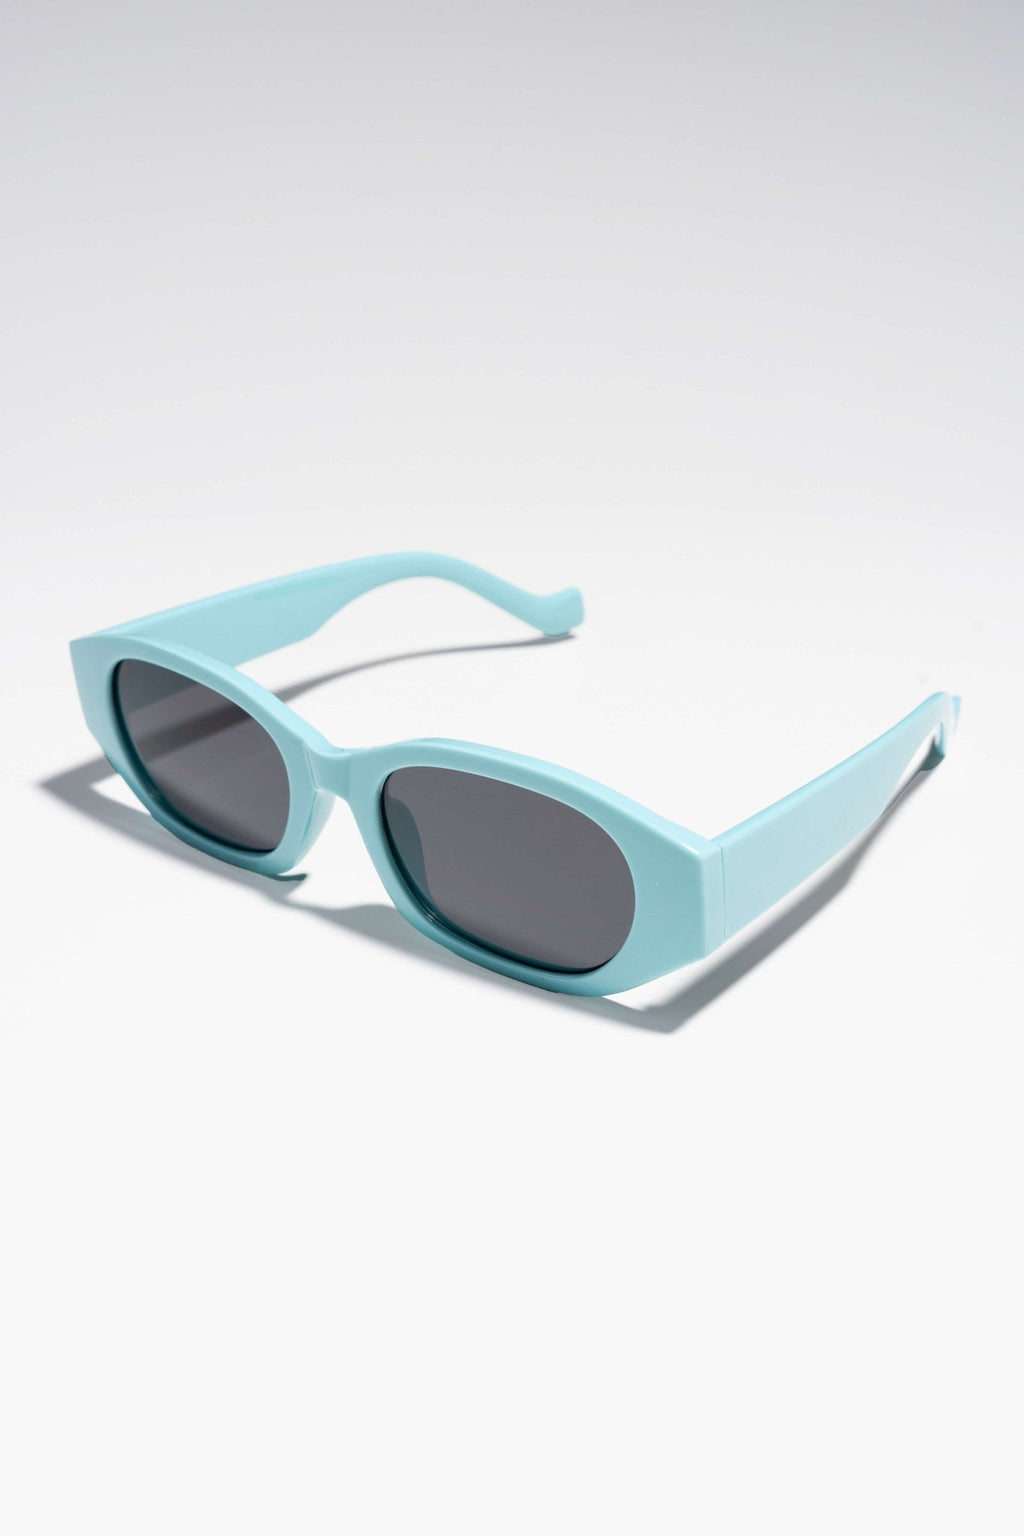 Gafas de sol Nicola - Azul/Negro